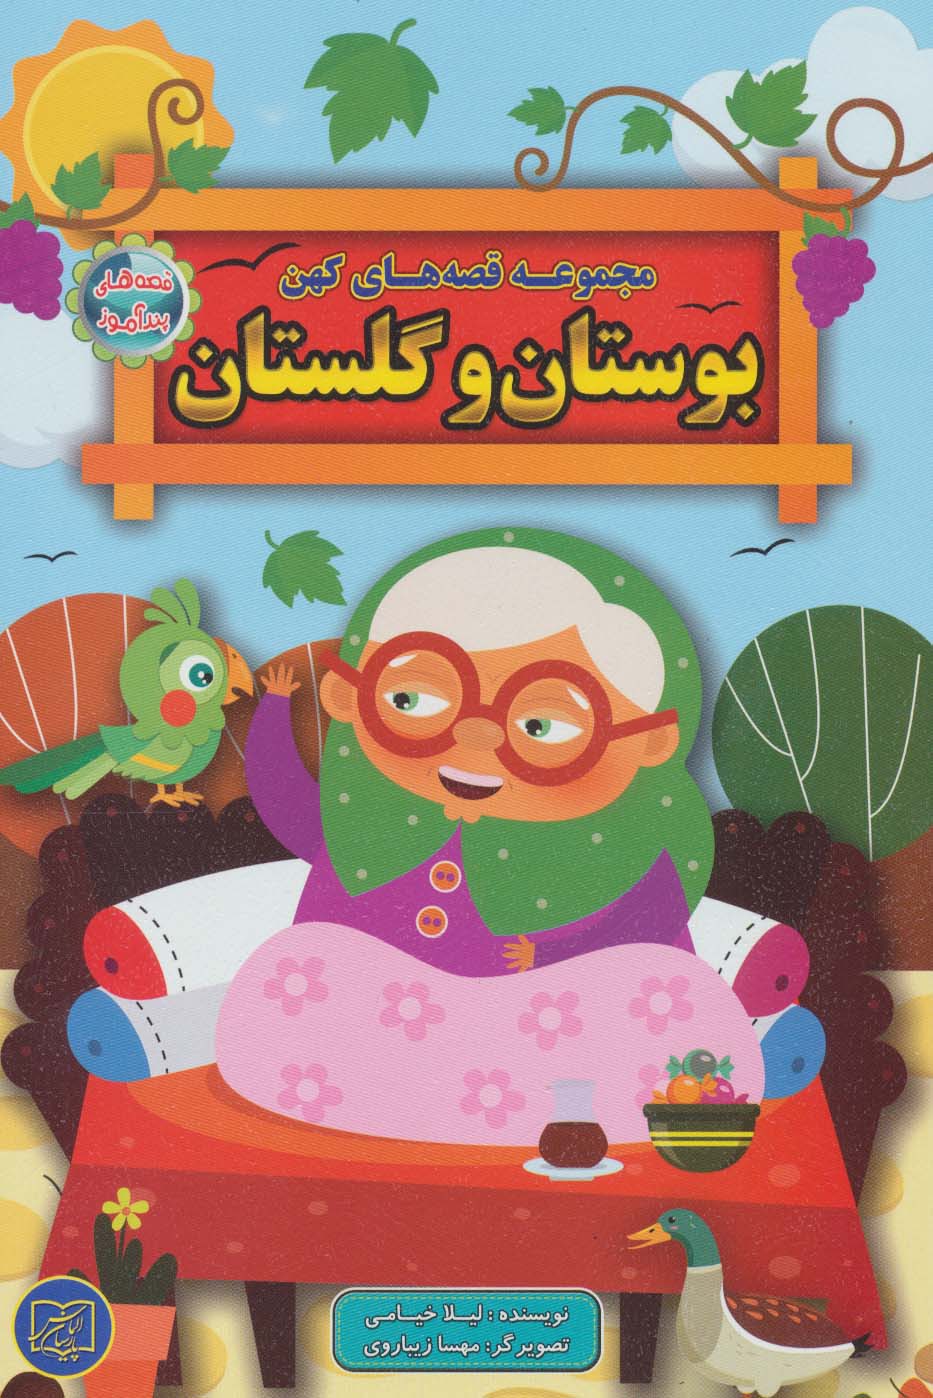  کتاب مجموعه قصه های کهن بوستان و گلستان